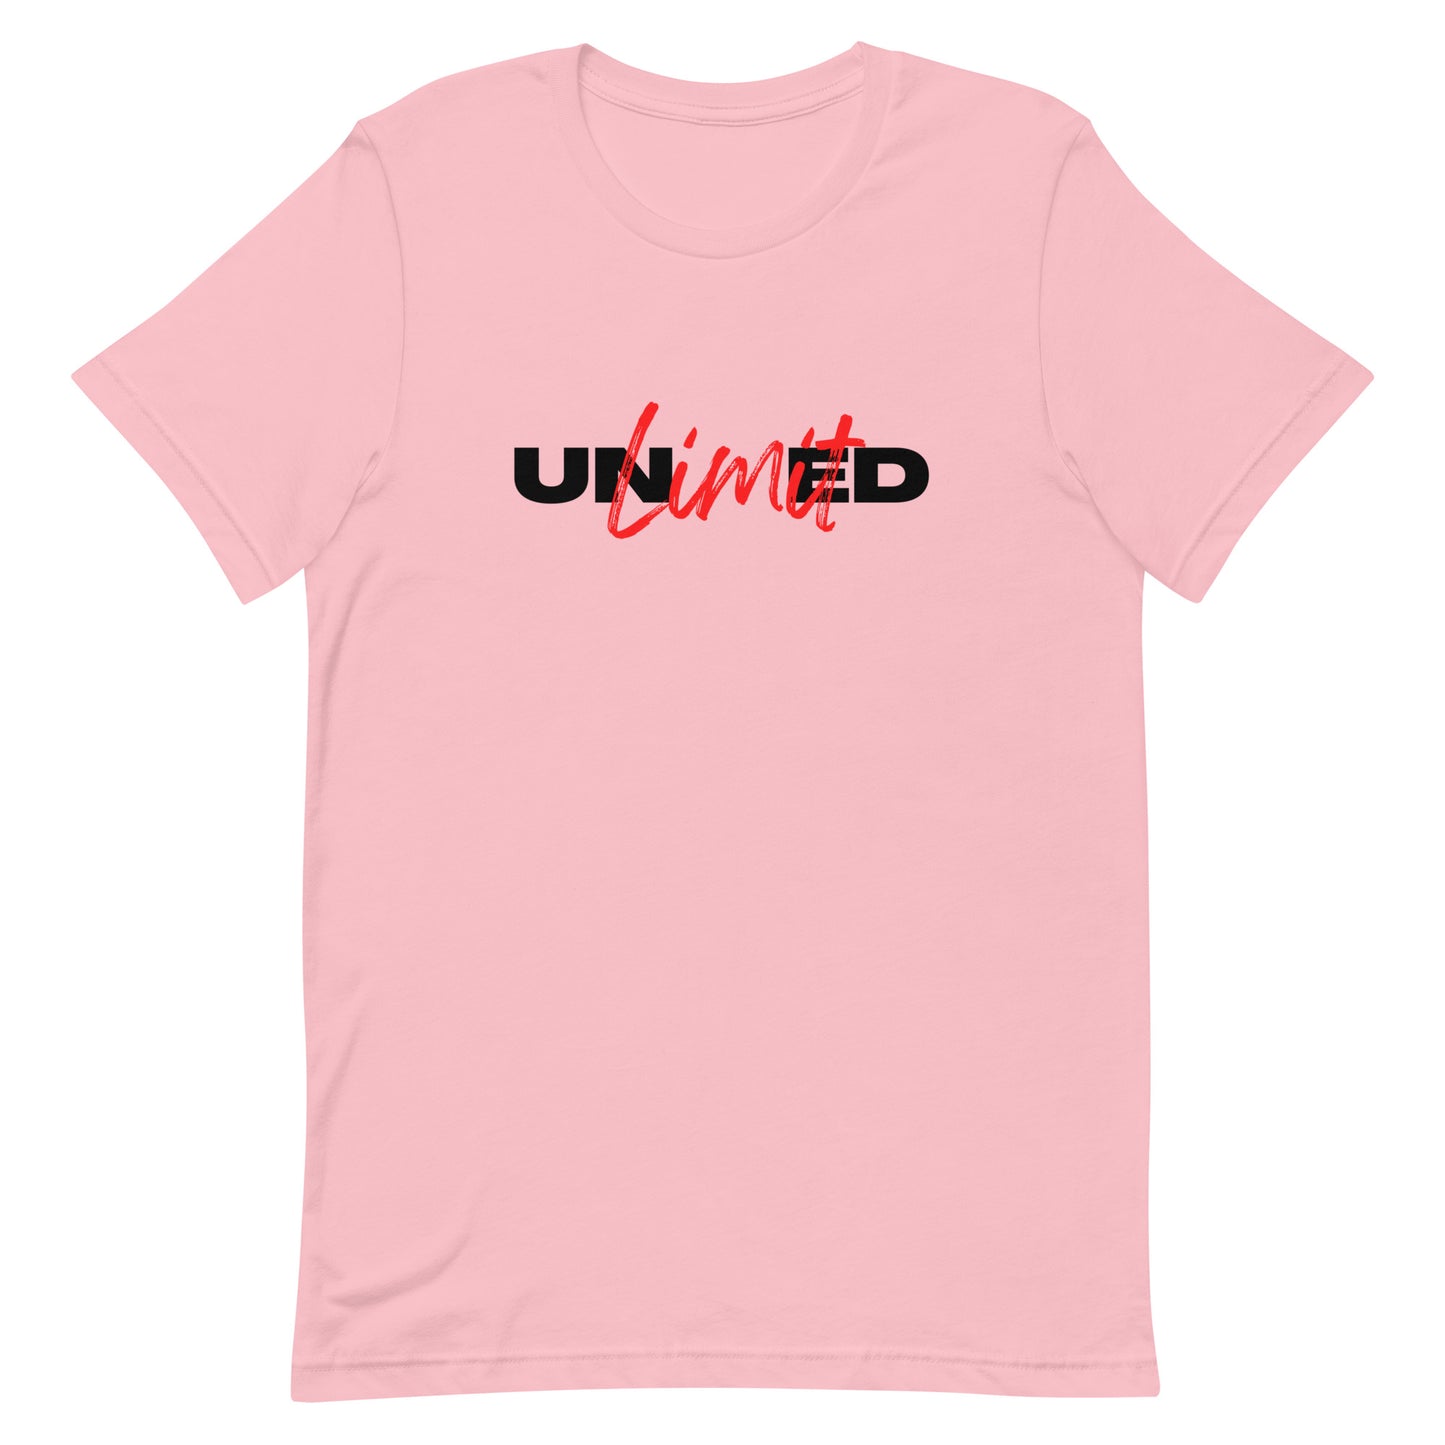 UNLIMITED - Unisex t-shirt